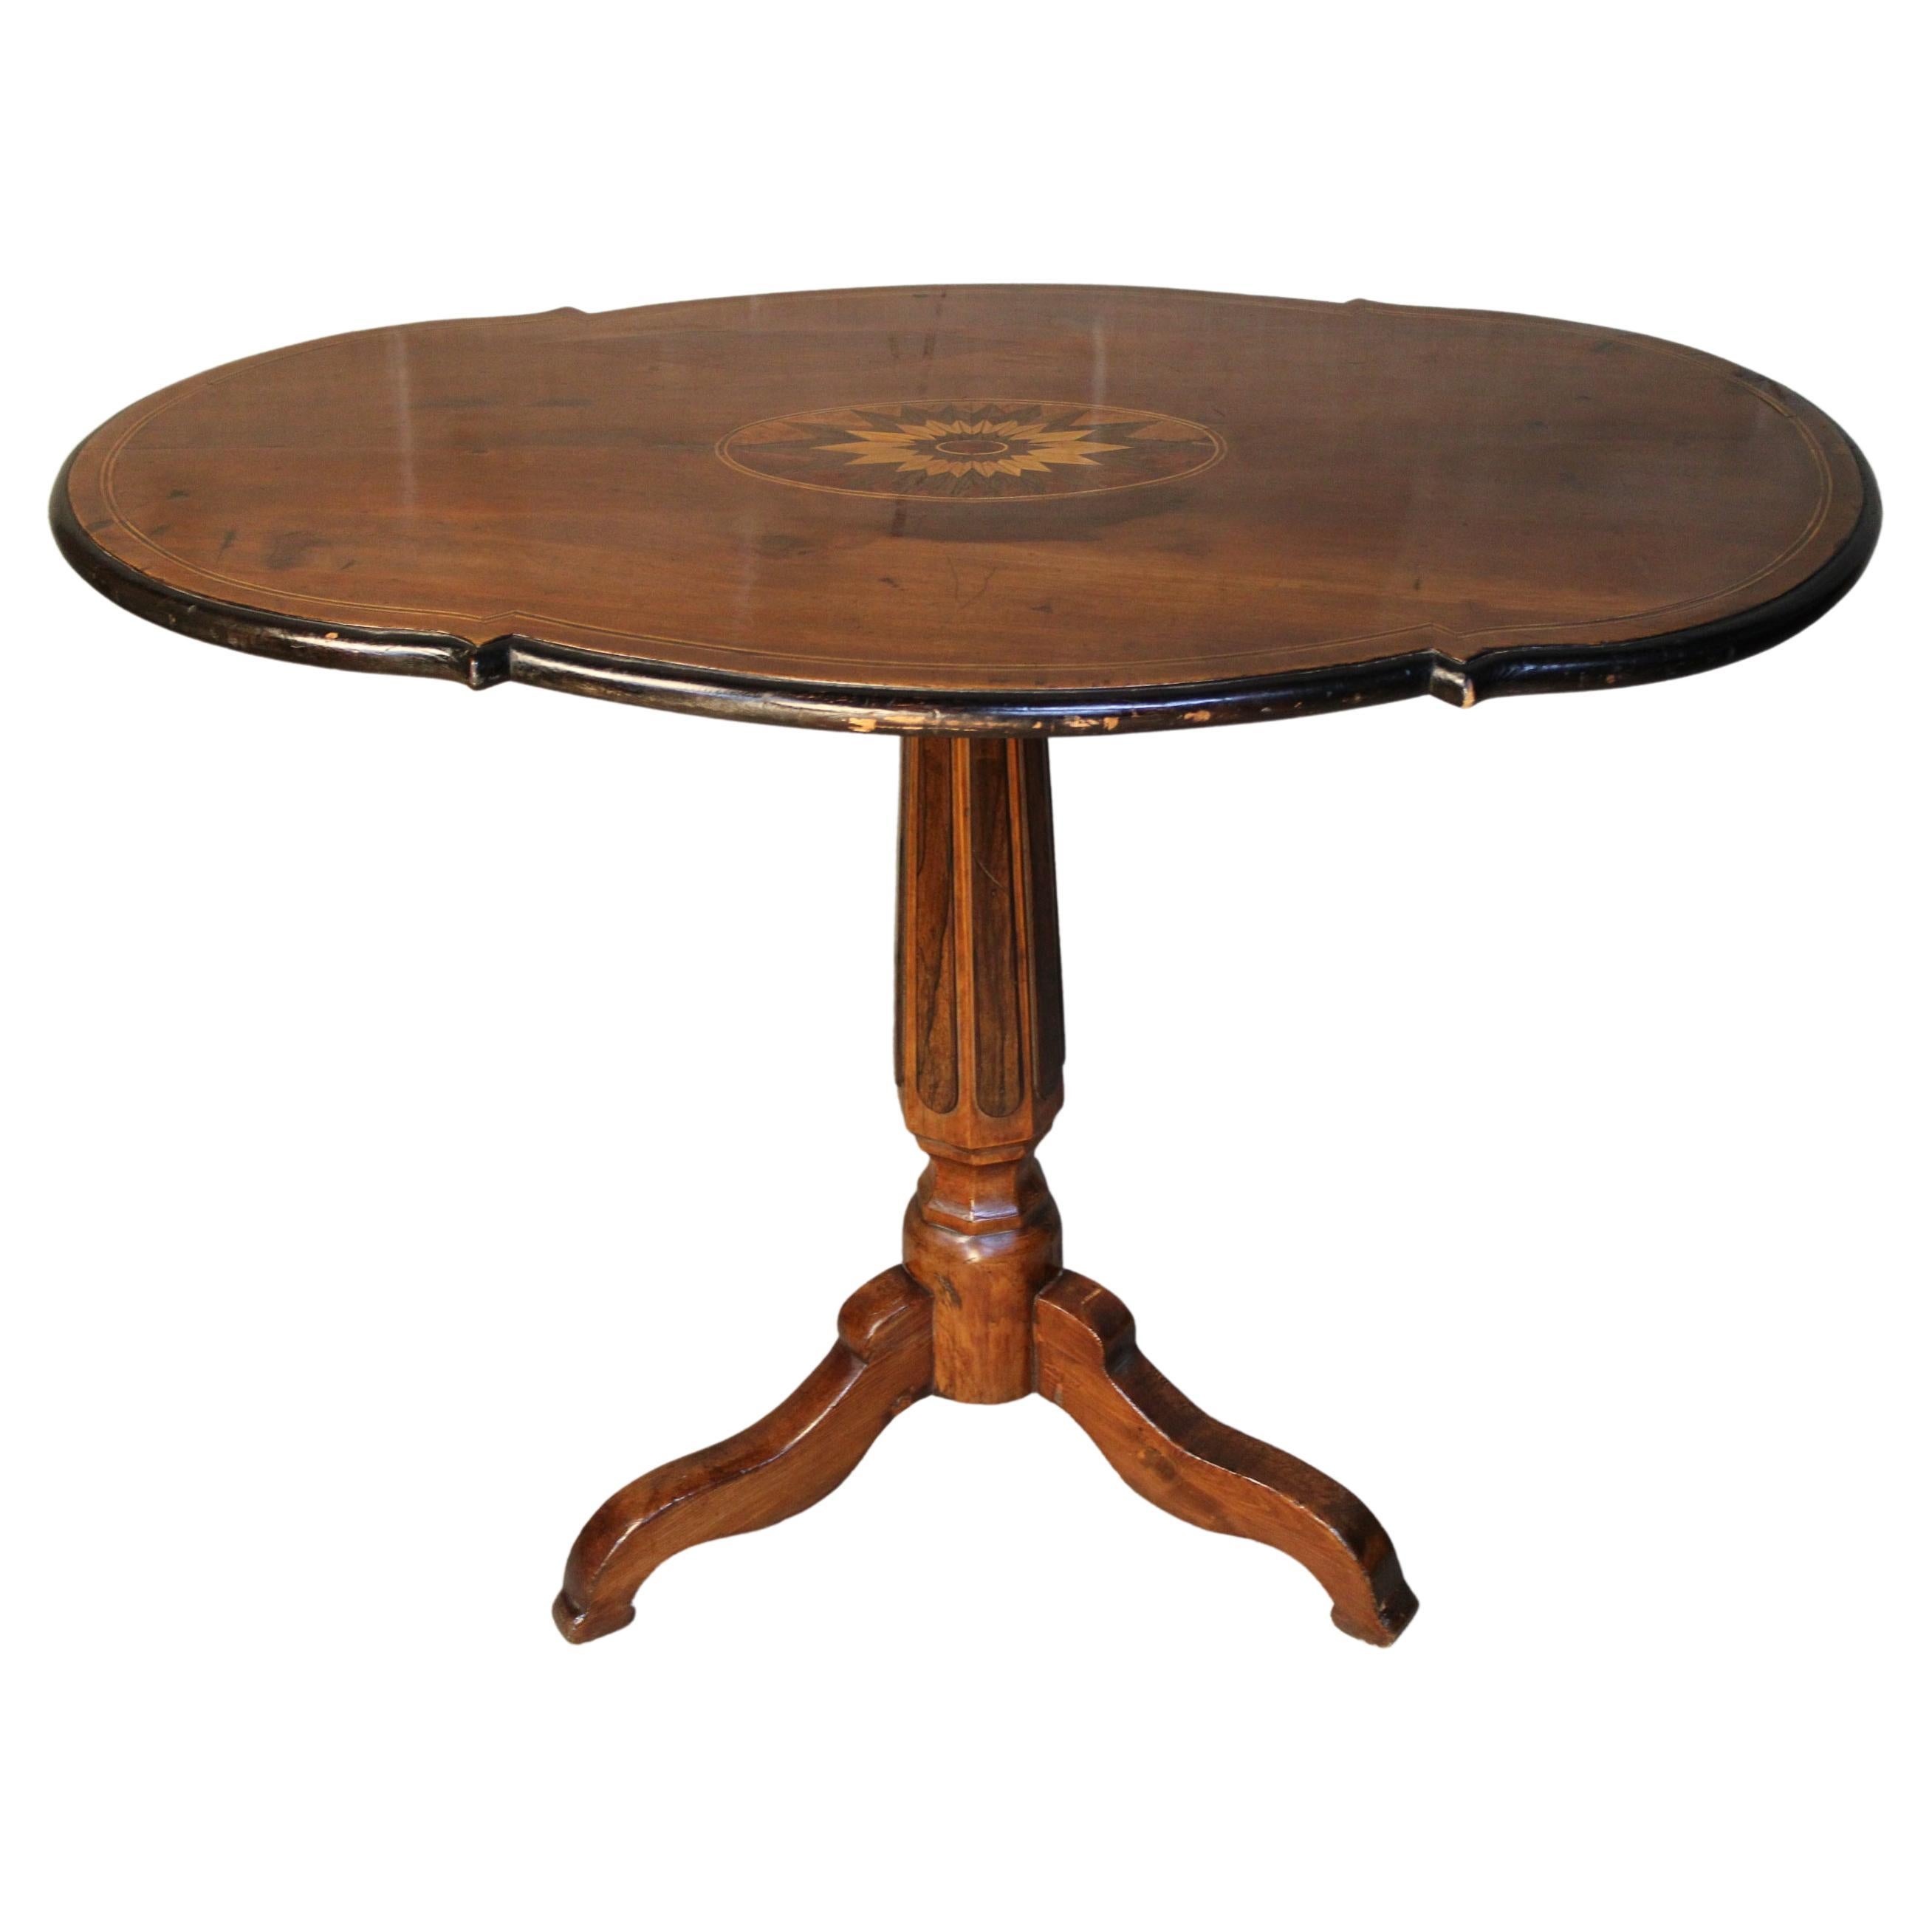 19th Century Italian Marquetry Center Table, mahogany center table